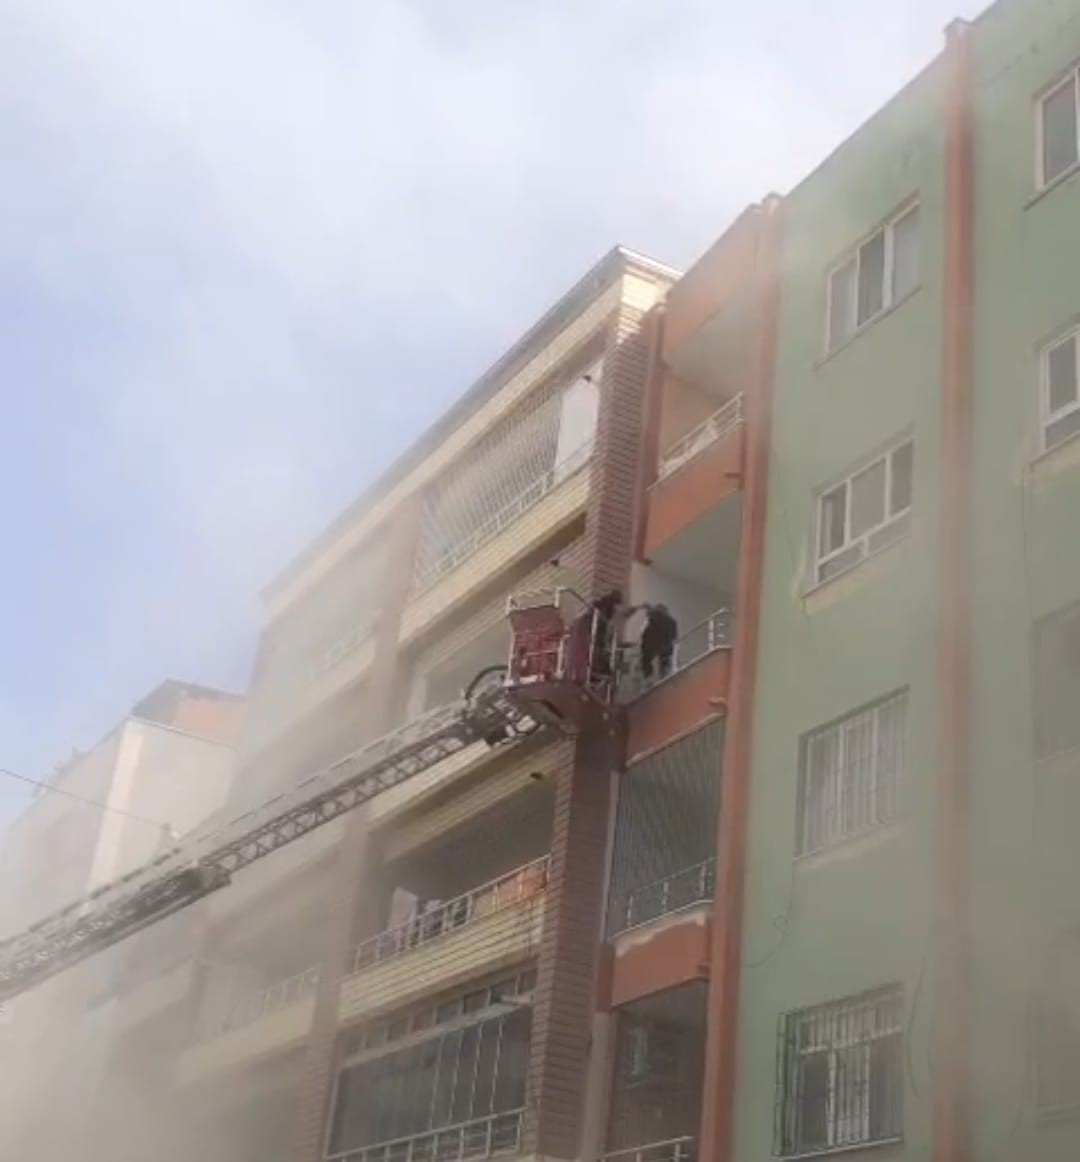 Batman’da 6 katlı binada yangın paniği: 5 kişi kurtarıldı